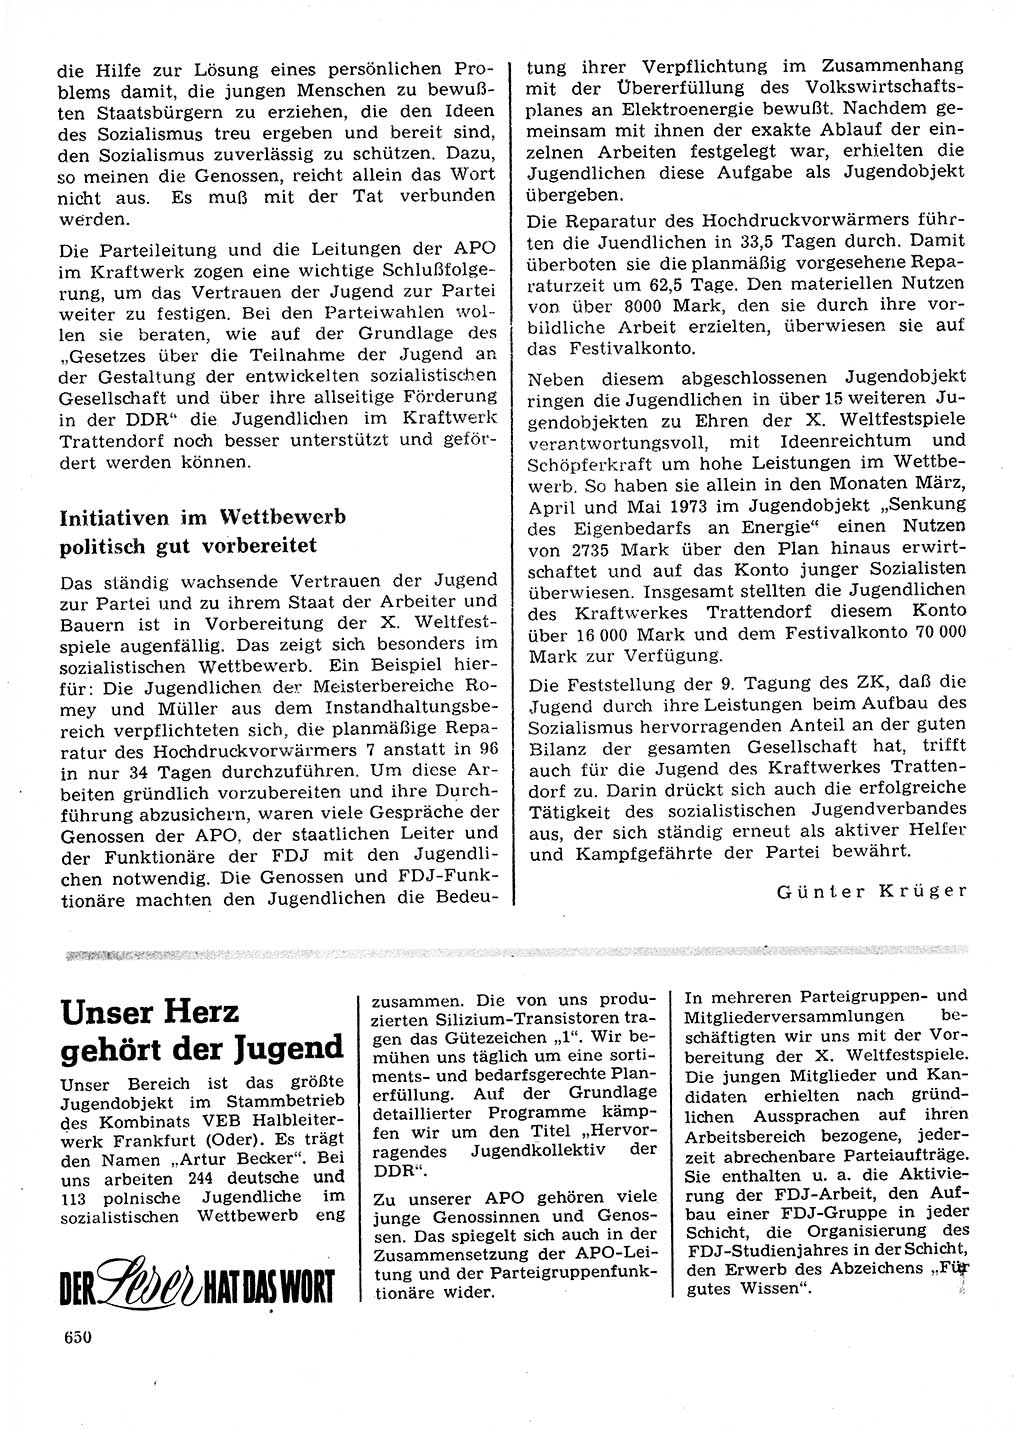 Neuer Weg (NW), Organ des Zentralkomitees (ZK) der SED (Sozialistische Einheitspartei Deutschlands) für Fragen des Parteilebens, 28. Jahrgang [Deutsche Demokratische Republik (DDR)] 1973, Seite 650 (NW ZK SED DDR 1973, S. 650)